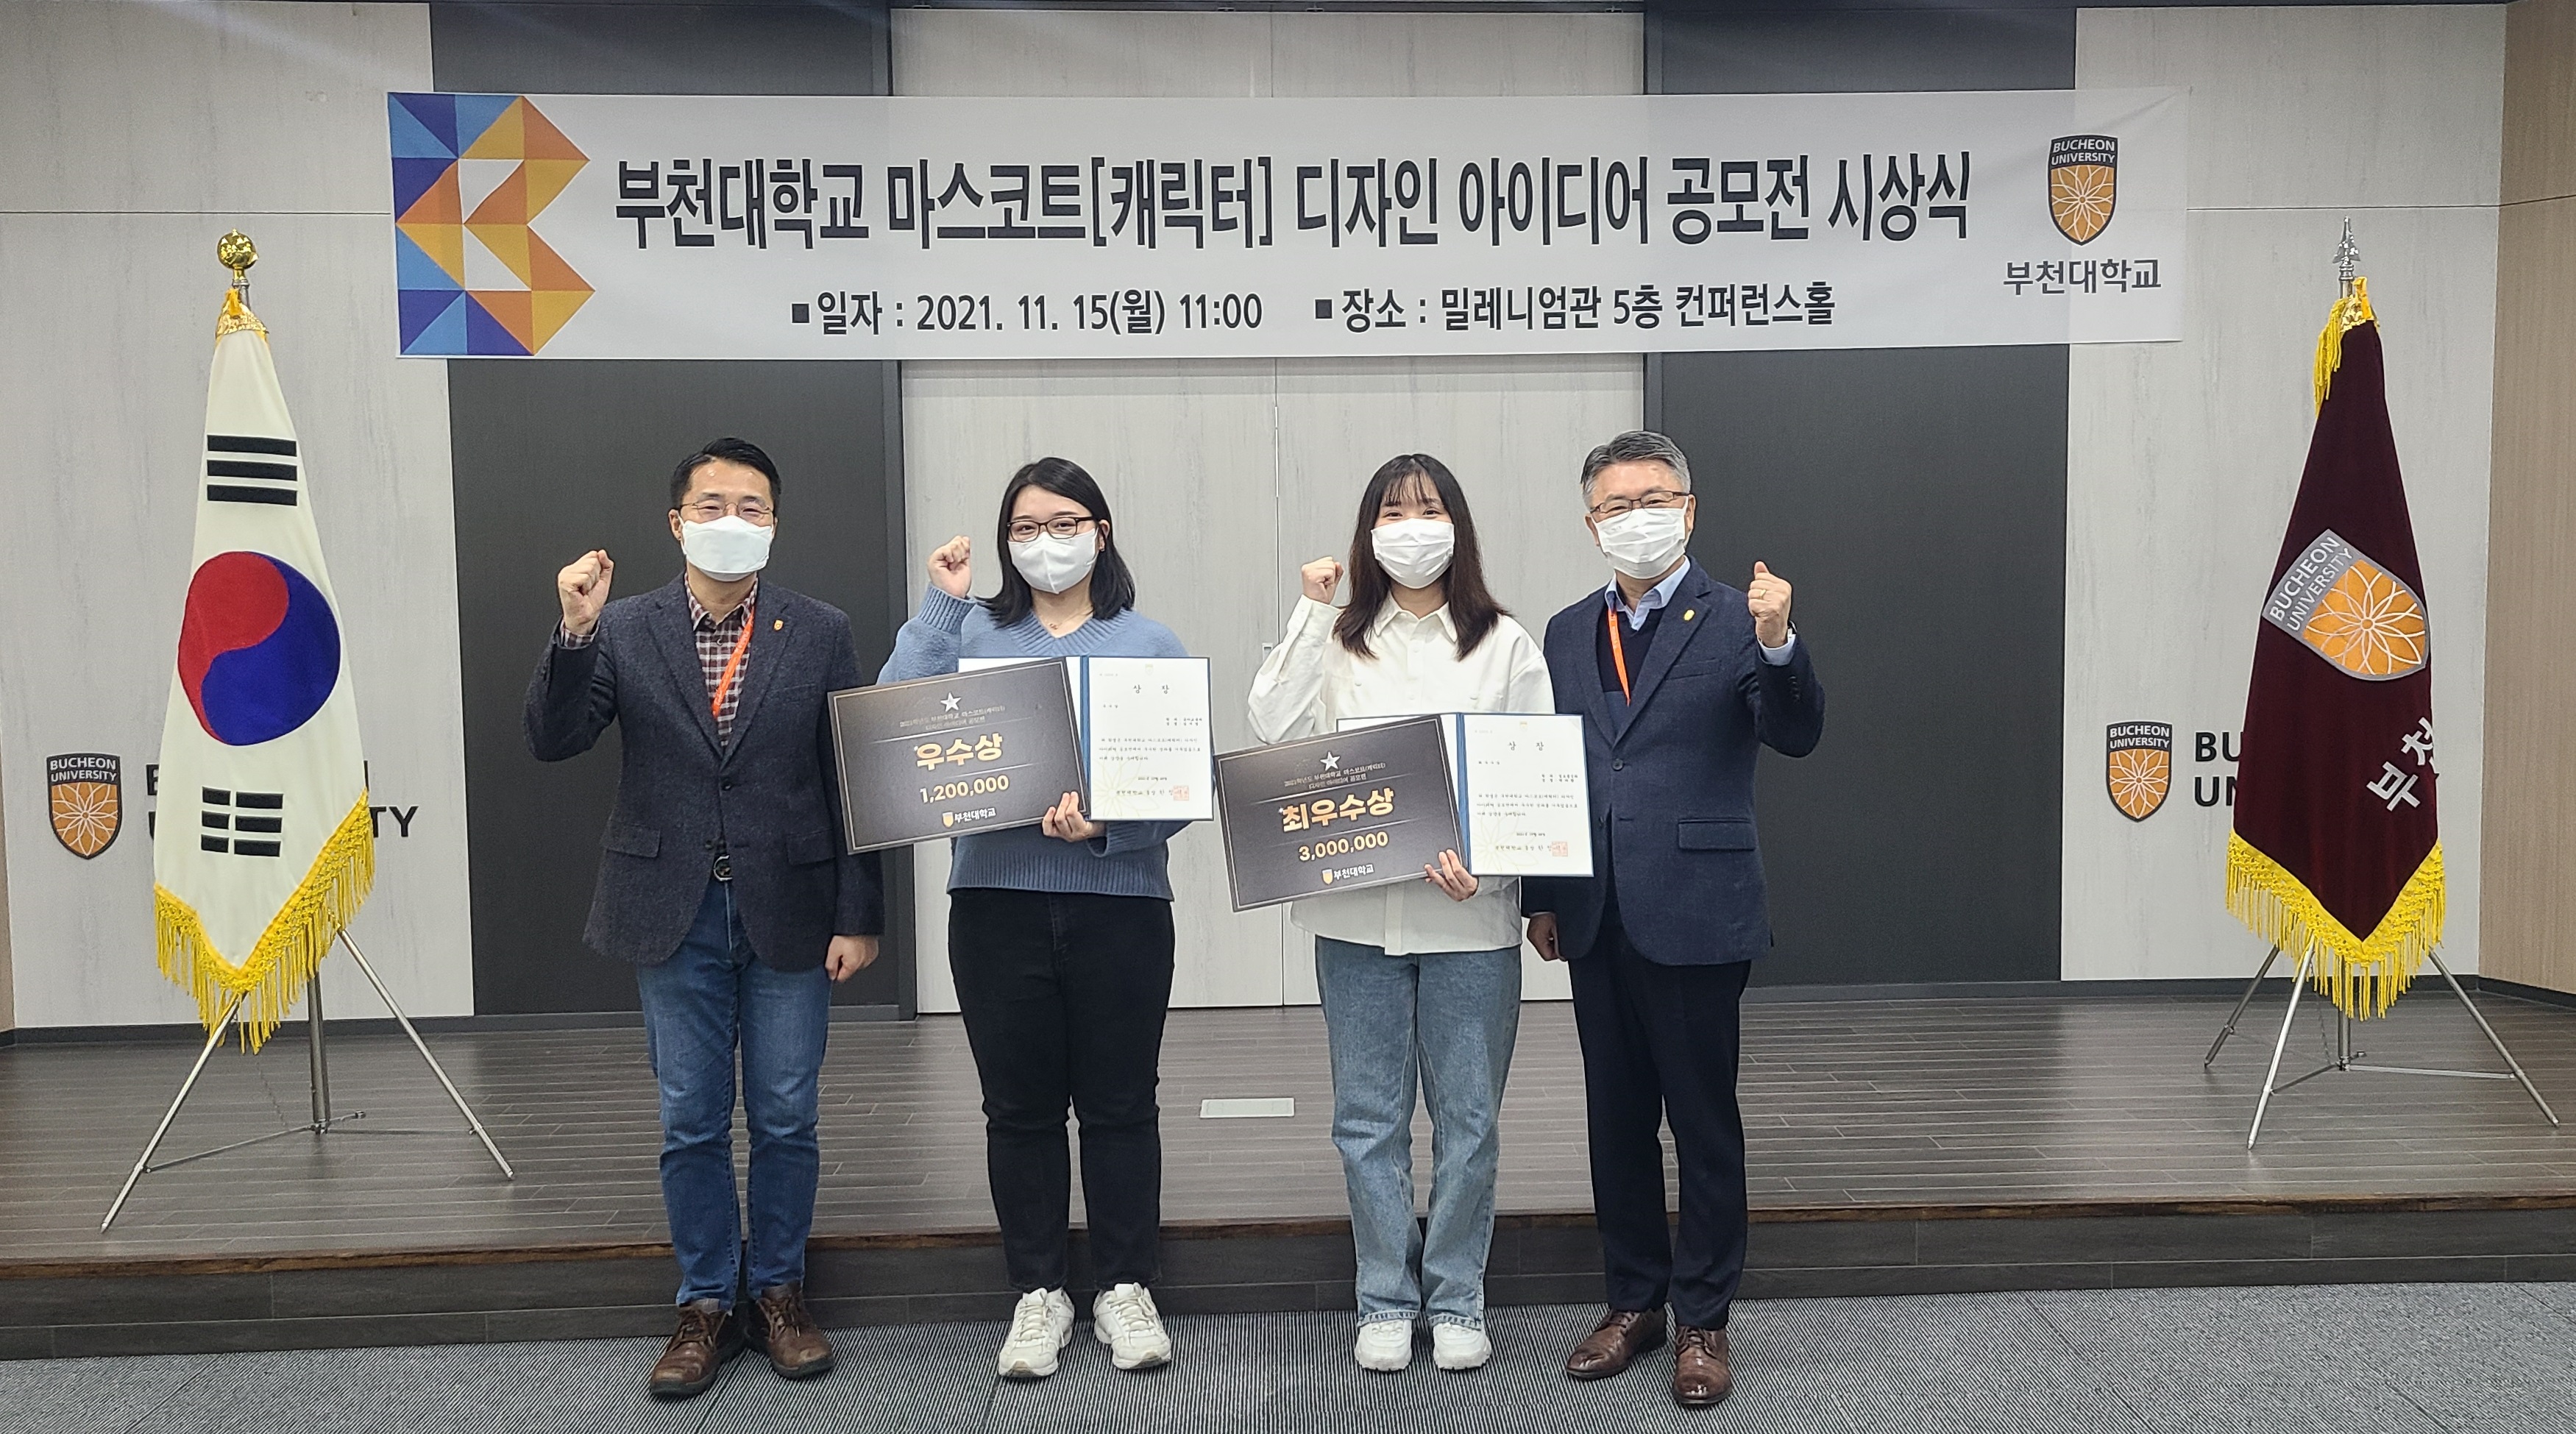 부천대학교 ‘마스코트[캐릭터] 디자인 아이디어 공모전’ 시상식 개최